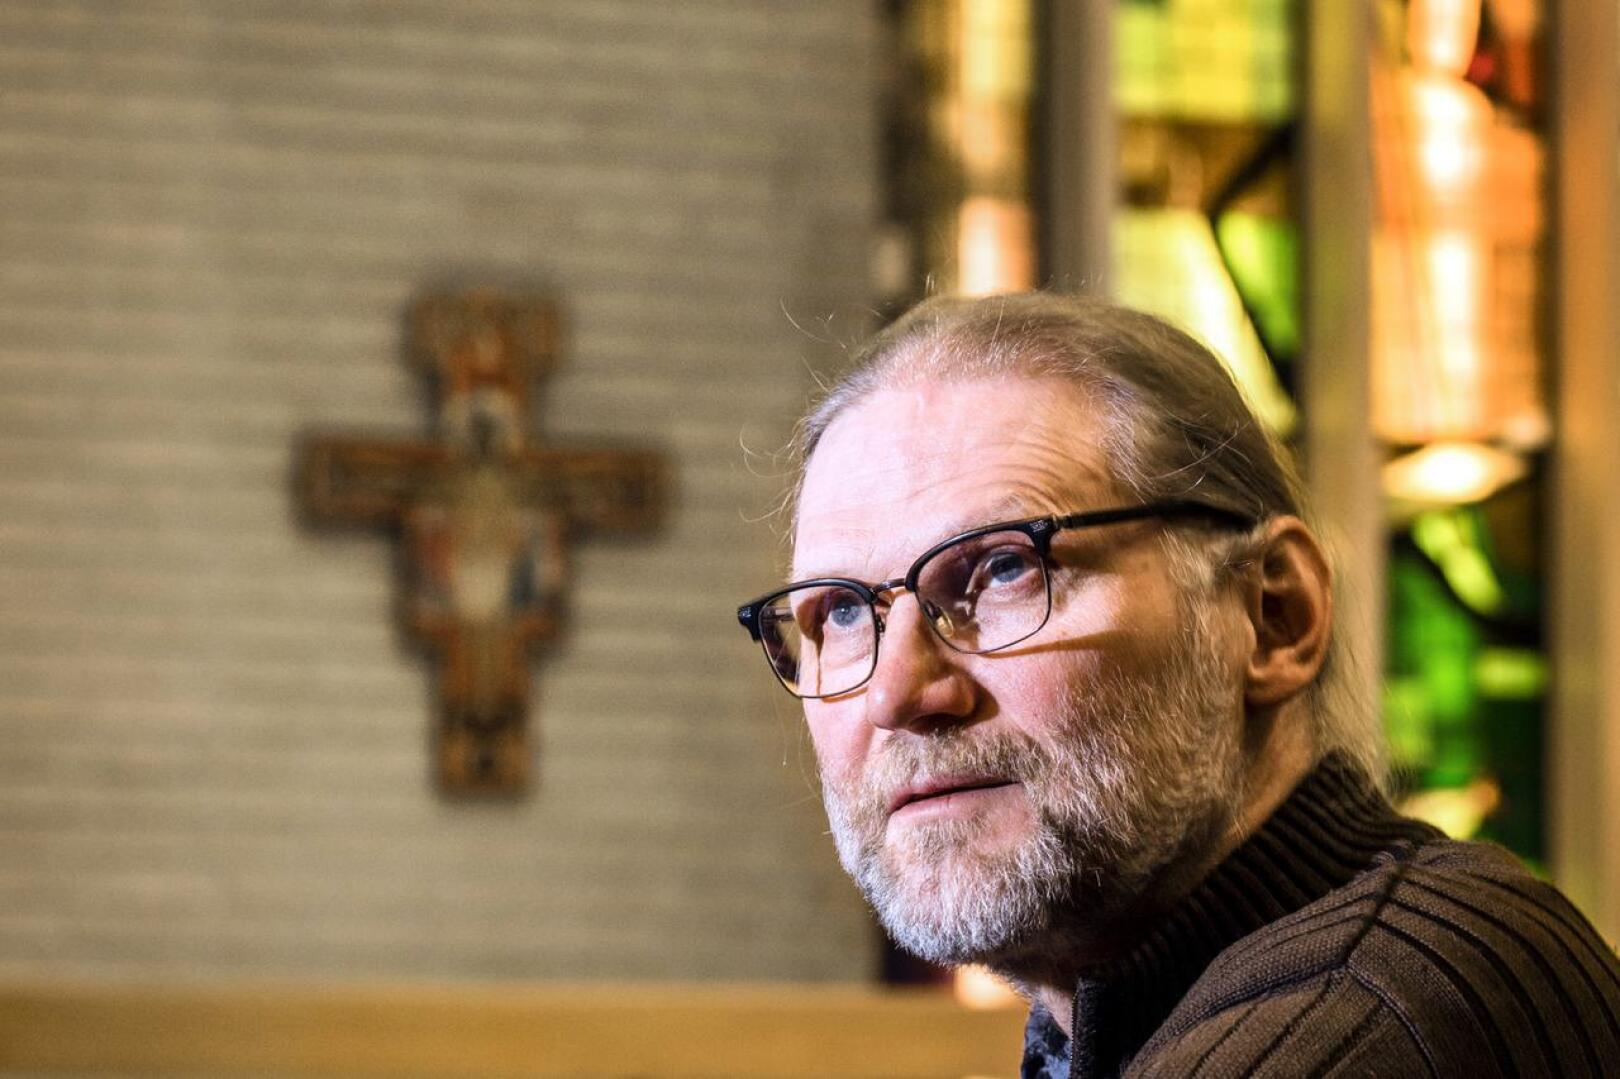 Kokkolan suomalaisen seurakunnan kirkkoherra Jouni Sirviö yhtyy arvioon siitä, että marraskuun 2018 seurakuntavaaleissa ns. konservatiivien asema päätöksenteossa vahvistui.